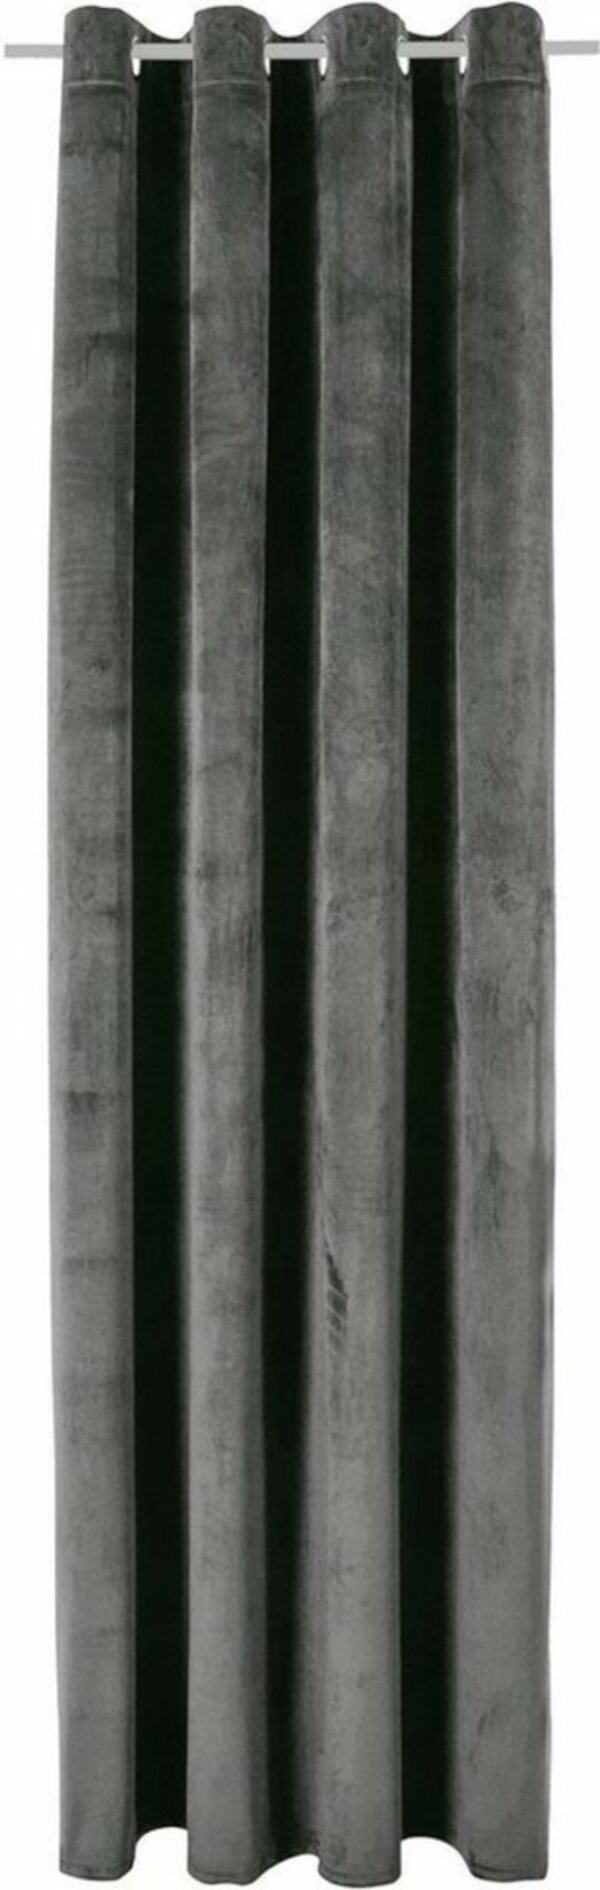 Bild 1 von Vorhang Leroy, Bruno Banani, Ösen (1 St), blickdicht, Samt, blickdicht, monochrom, verschiedene Größen, Grau